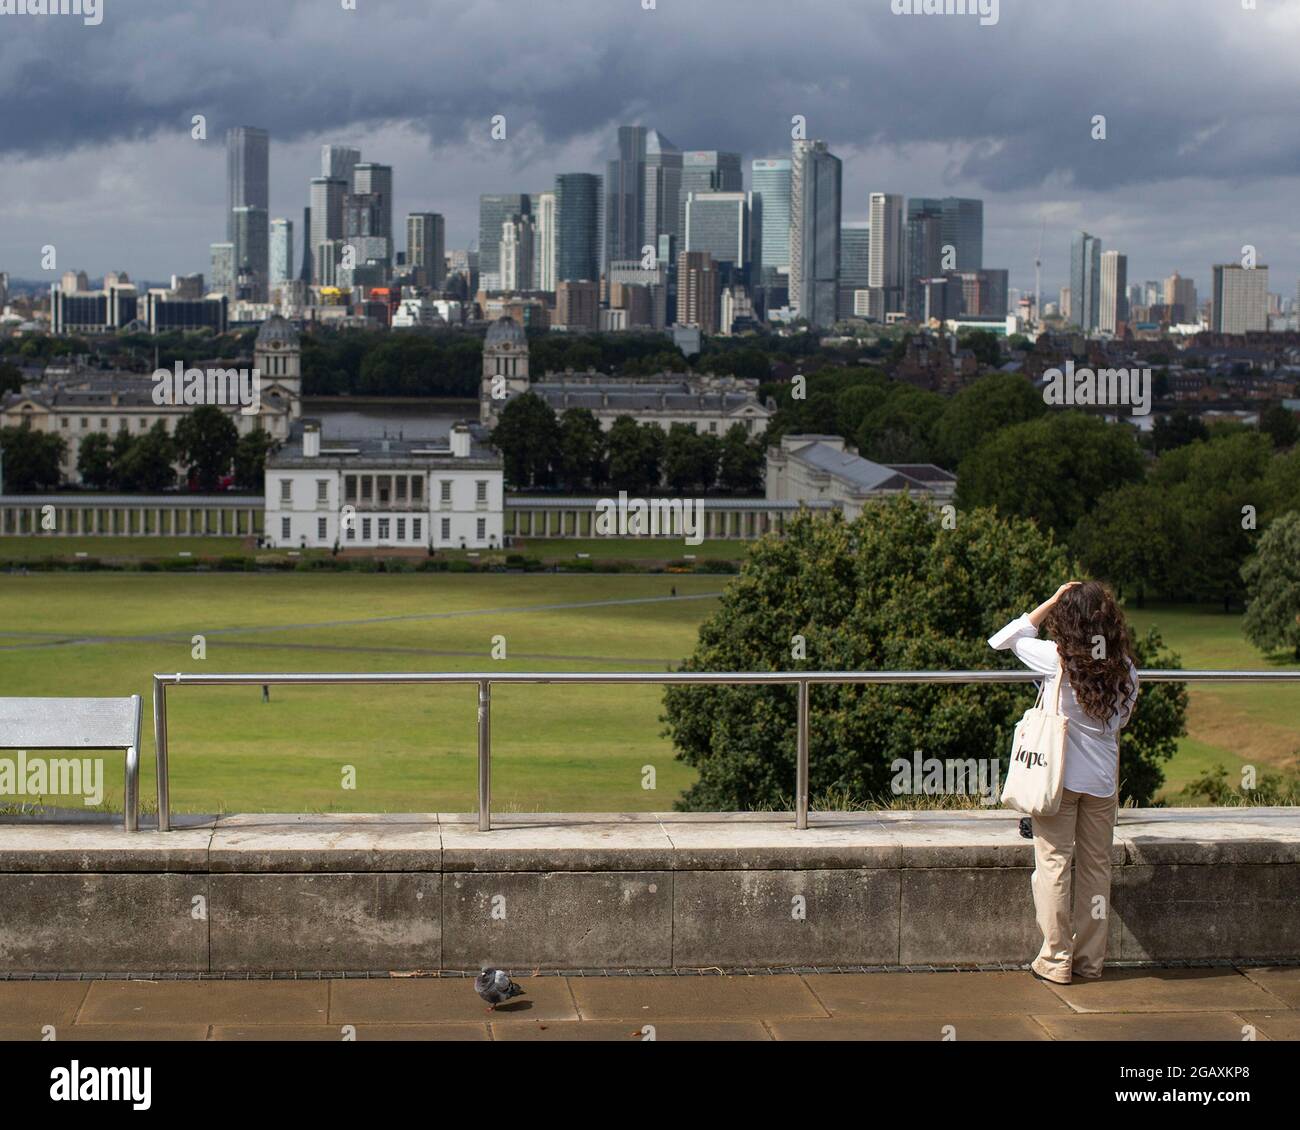 30/07/2021. London, Großbritannien. Ein Mitglied der Öffentlichkeit blickt während eines Regensturms im Greenwich Park im Südosten Londons auf Canary Wharf. Phot Stockfoto